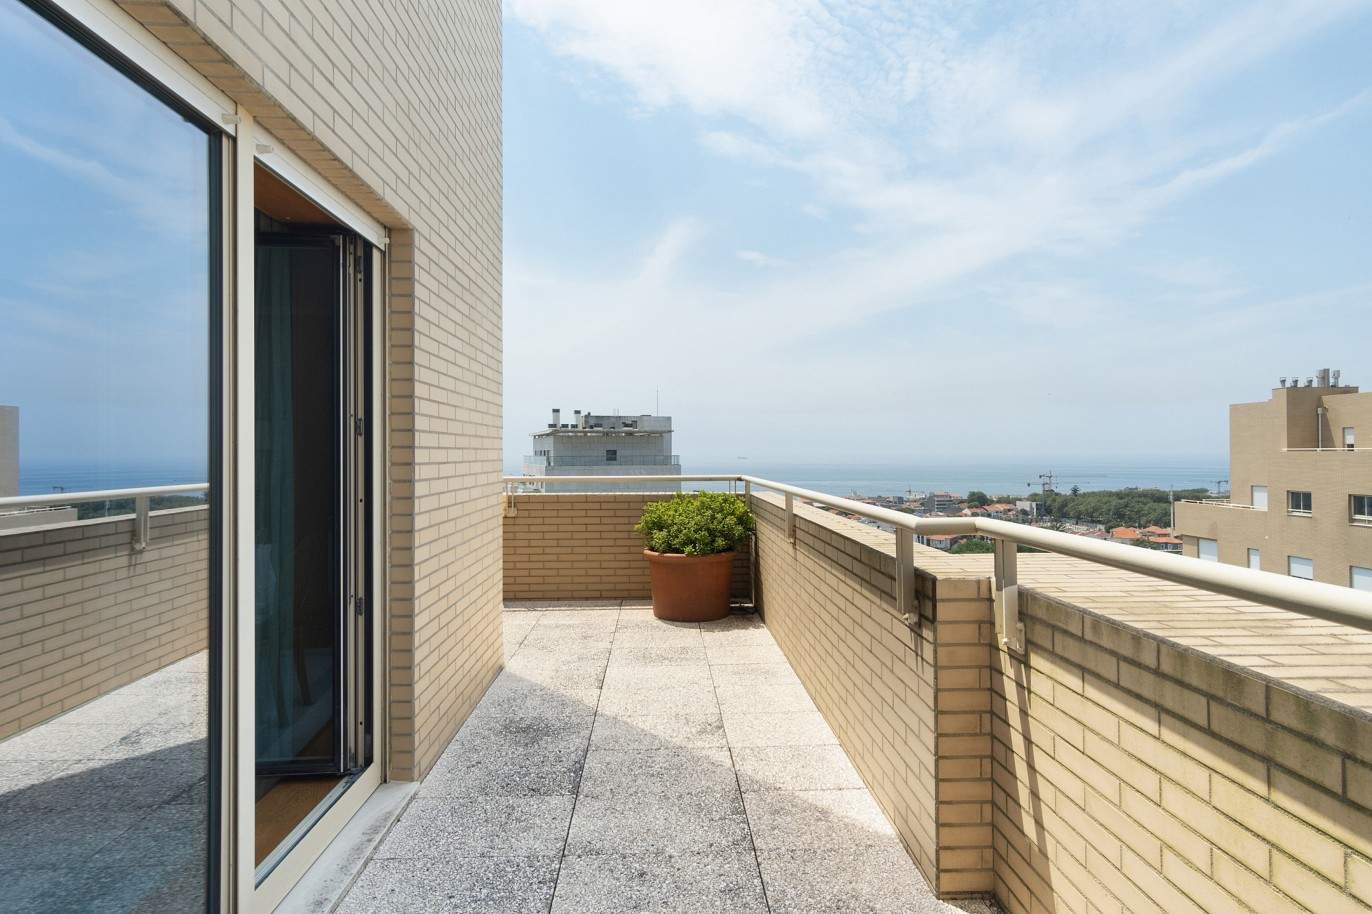 5 bedroom duplex flat with sea views, for sale, Pinhais da Foz, Porto, Portugal_203355